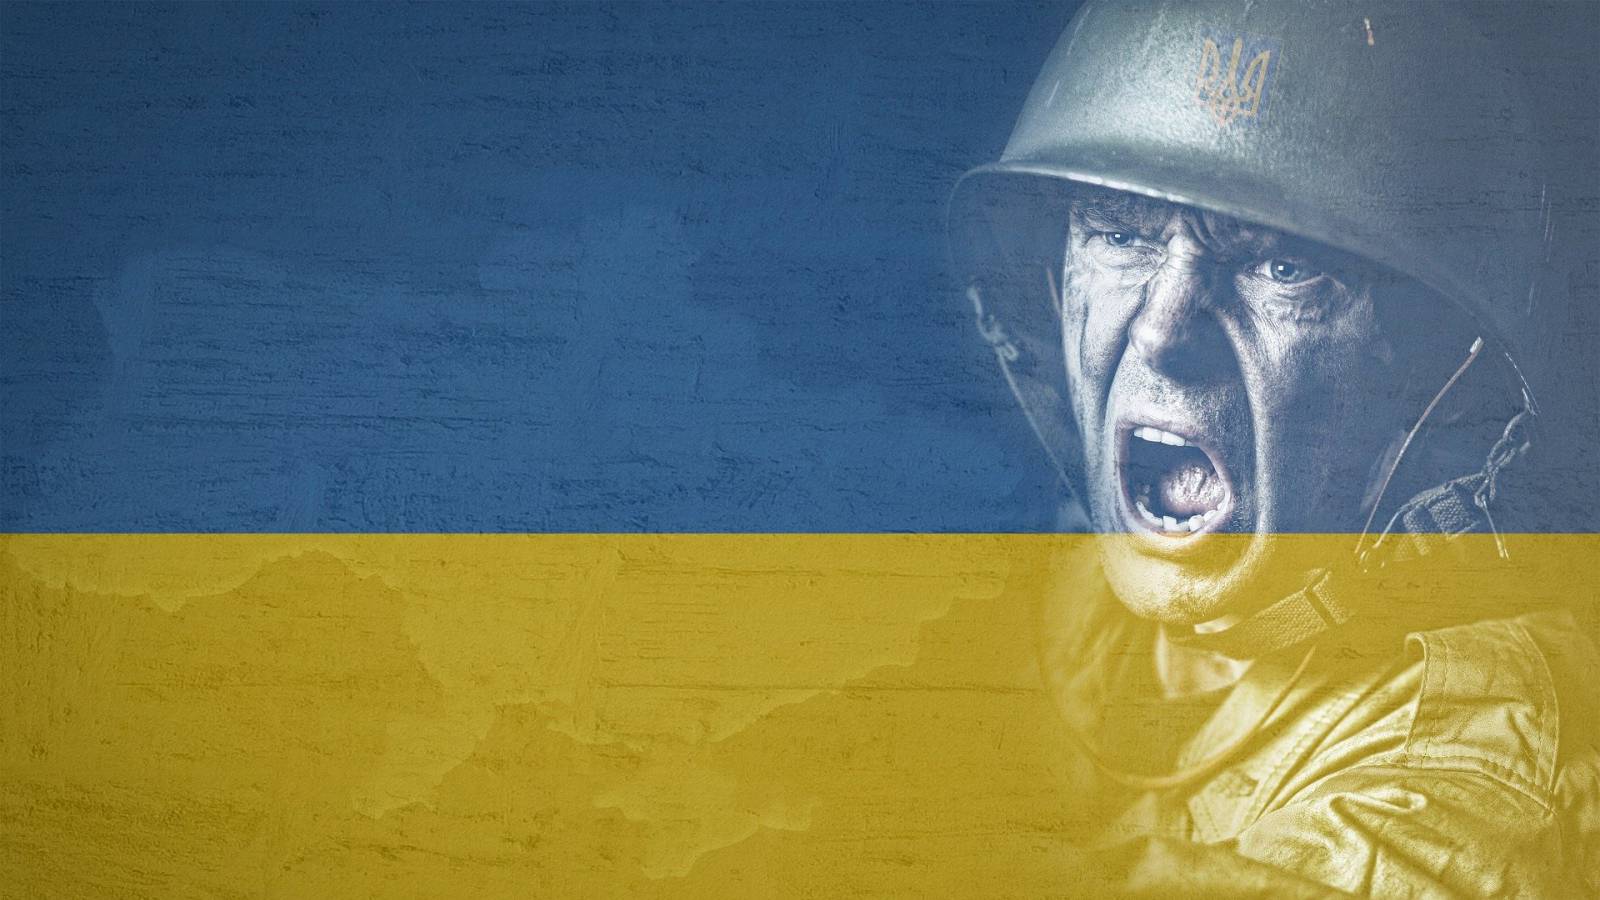 Ucraina are Probleme Majore din Cauza Atacurilor Asupra Centralelor Electrice